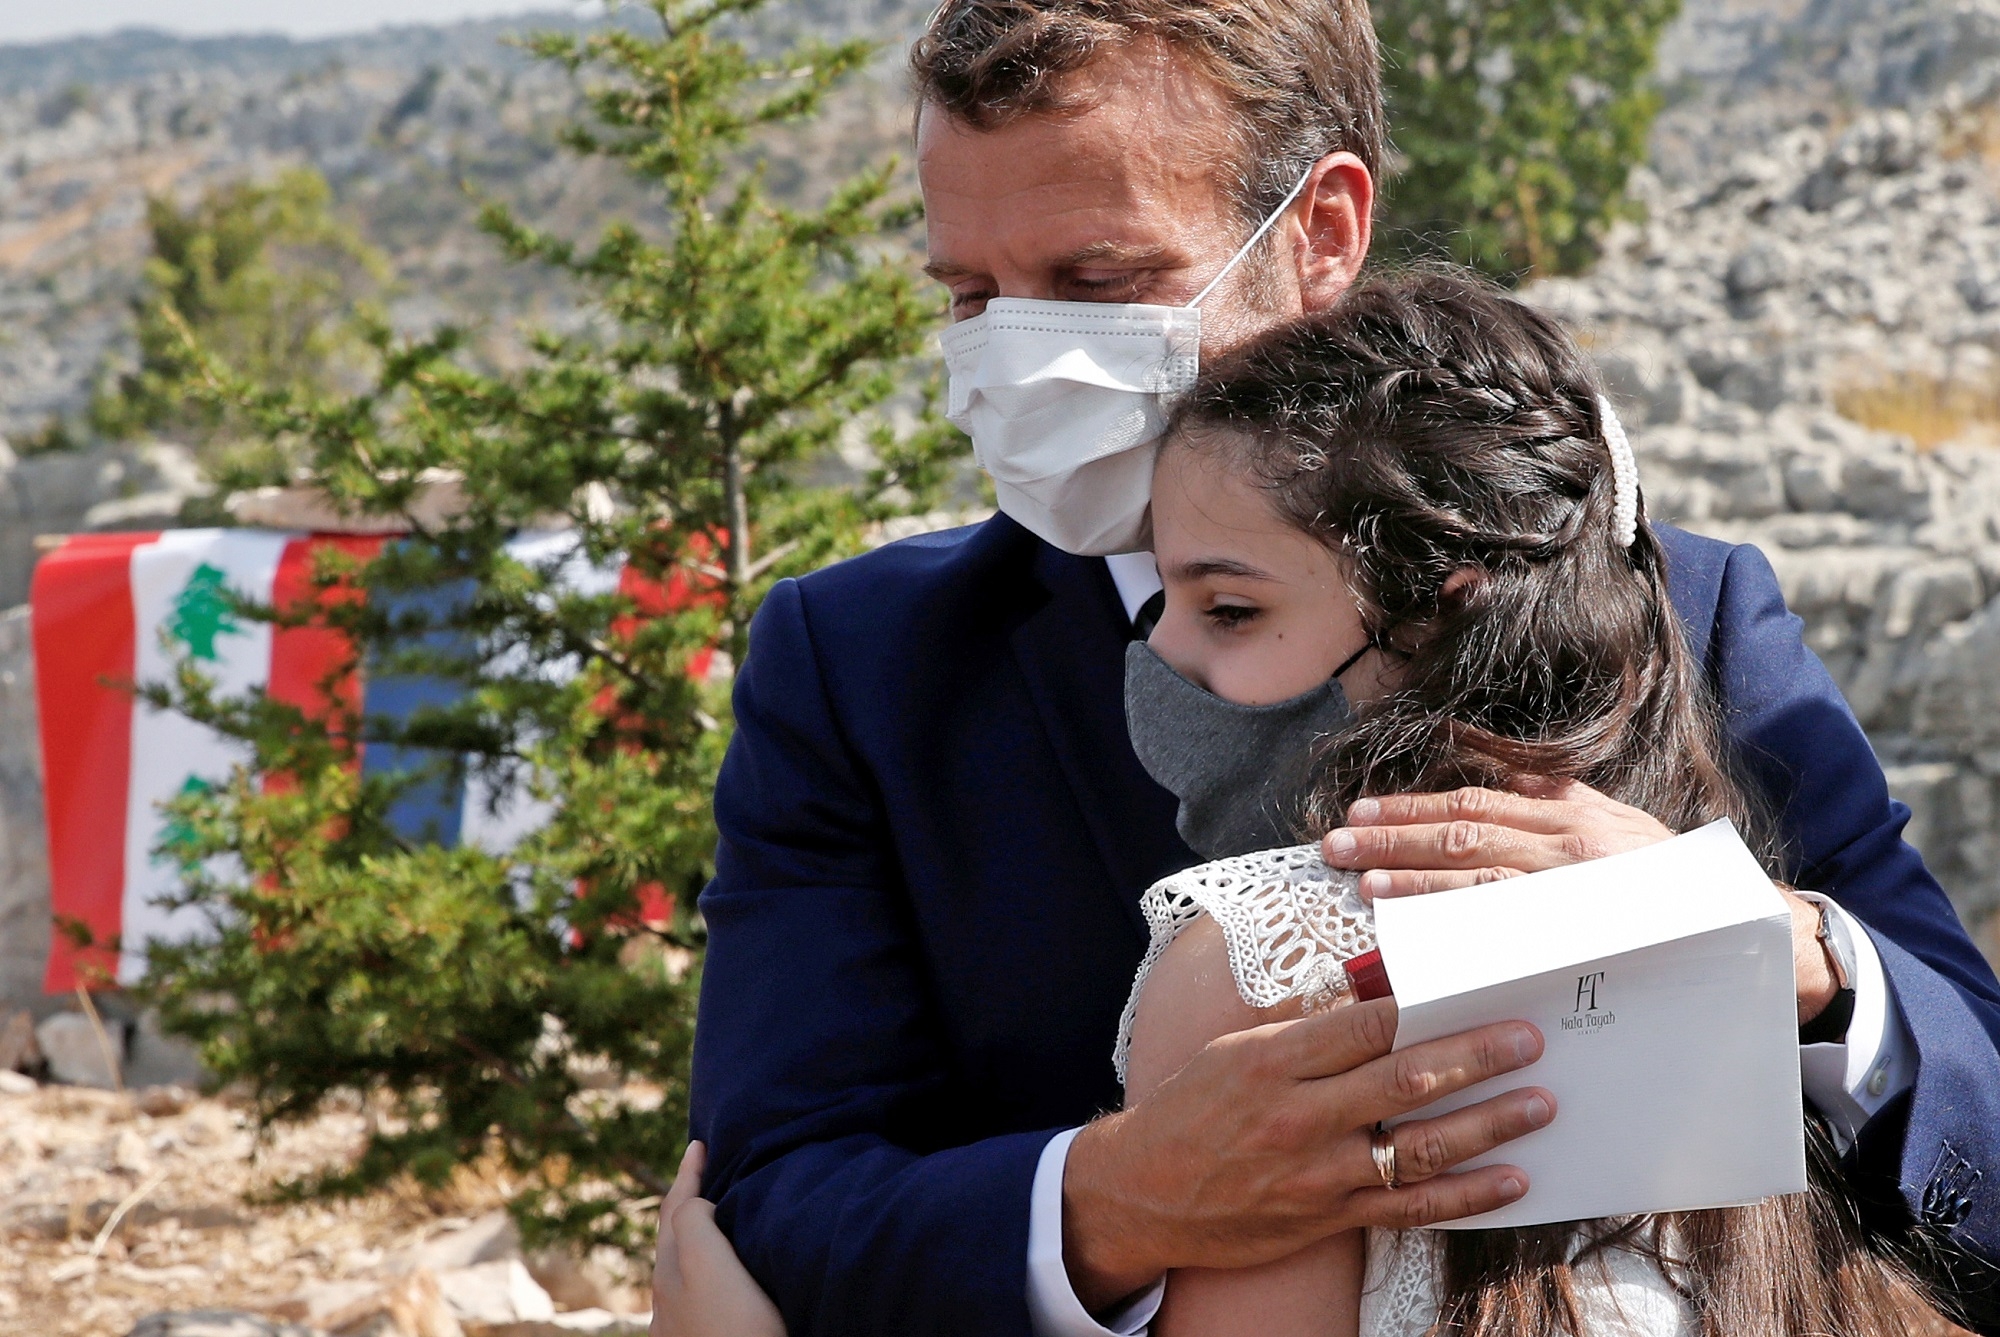 Macron hugs a blast victim during visit to Beirut